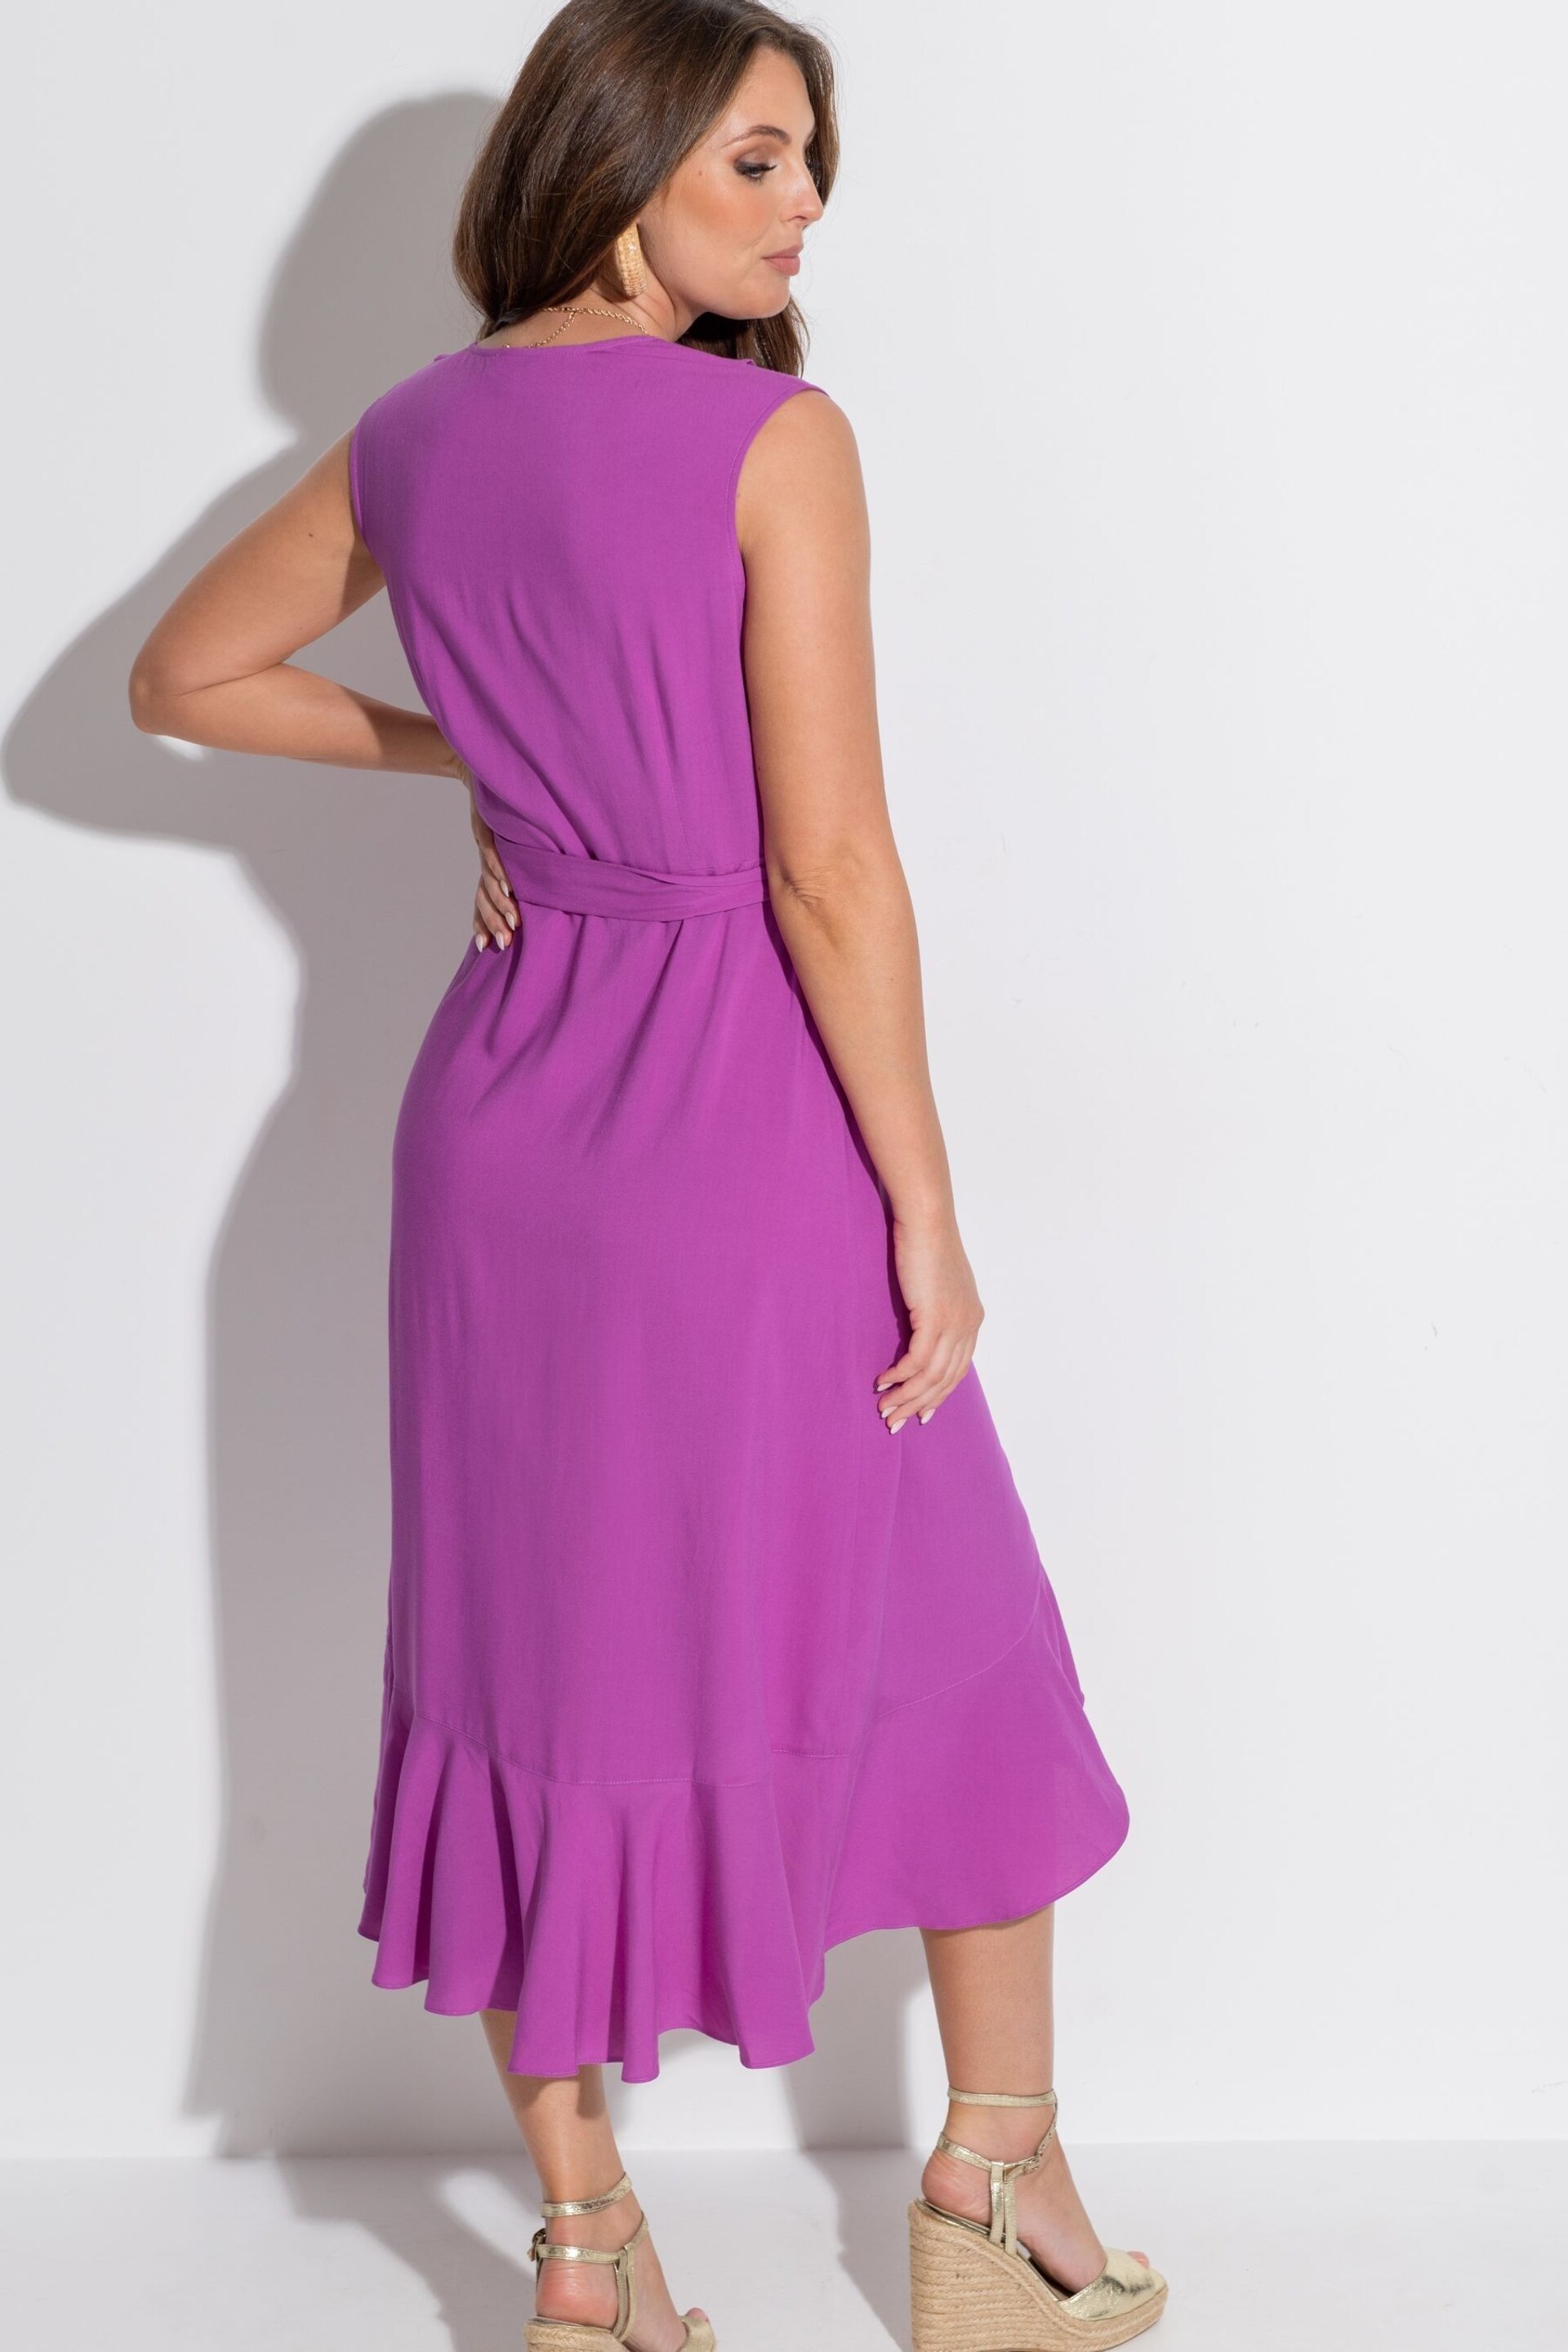 Pour Moi Purple Midaxi Wrap Dress - Image 4 of 6